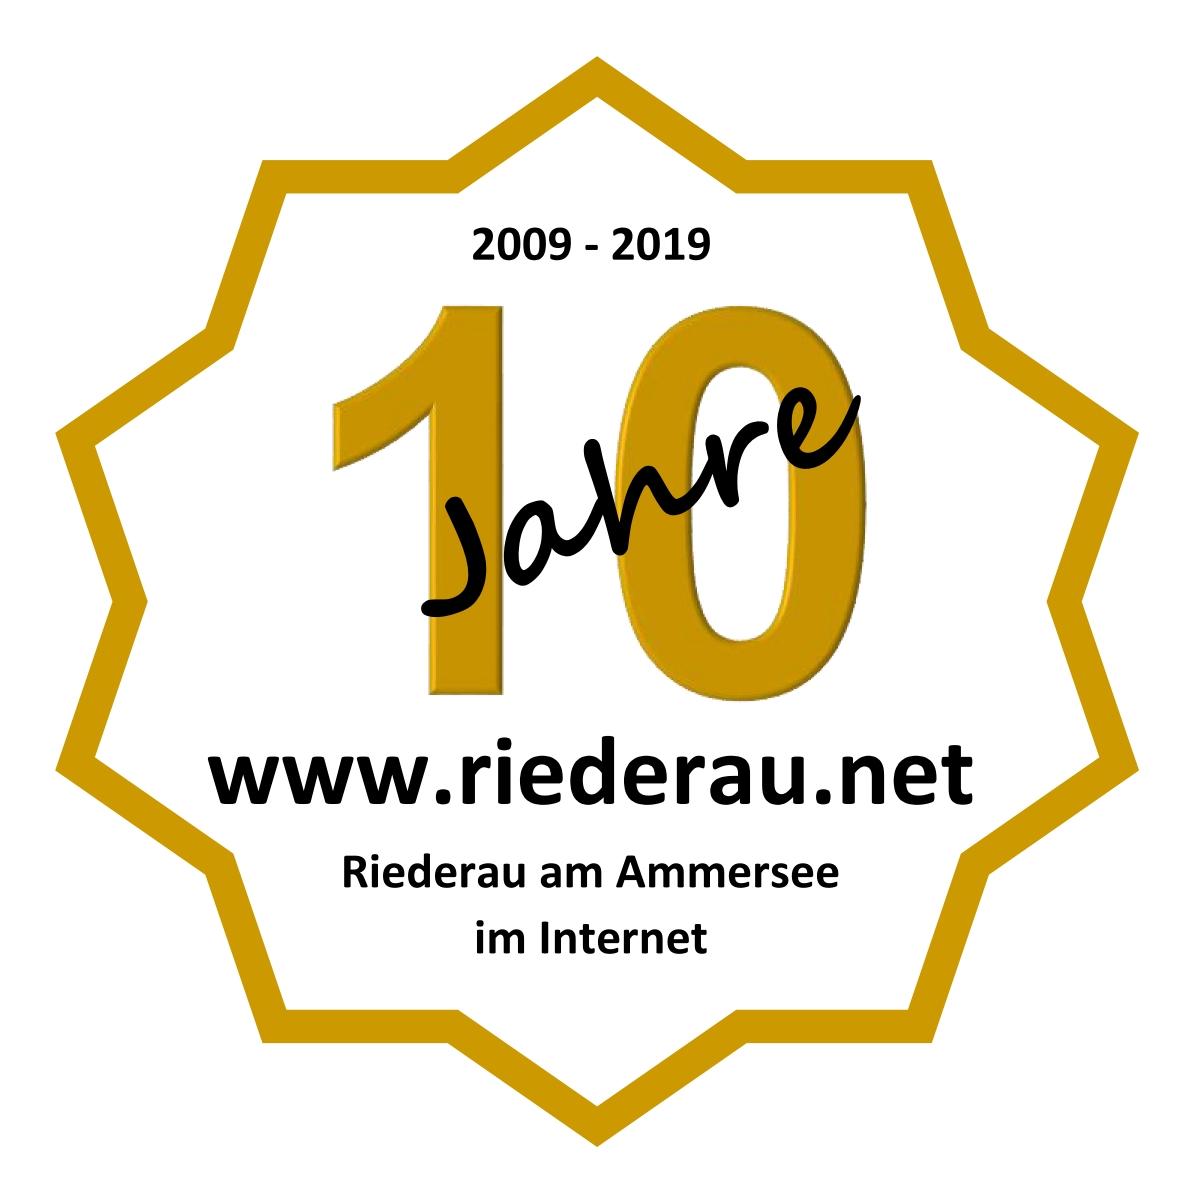 10 Jahre - www.riederau.net - 2009 bis 2019 